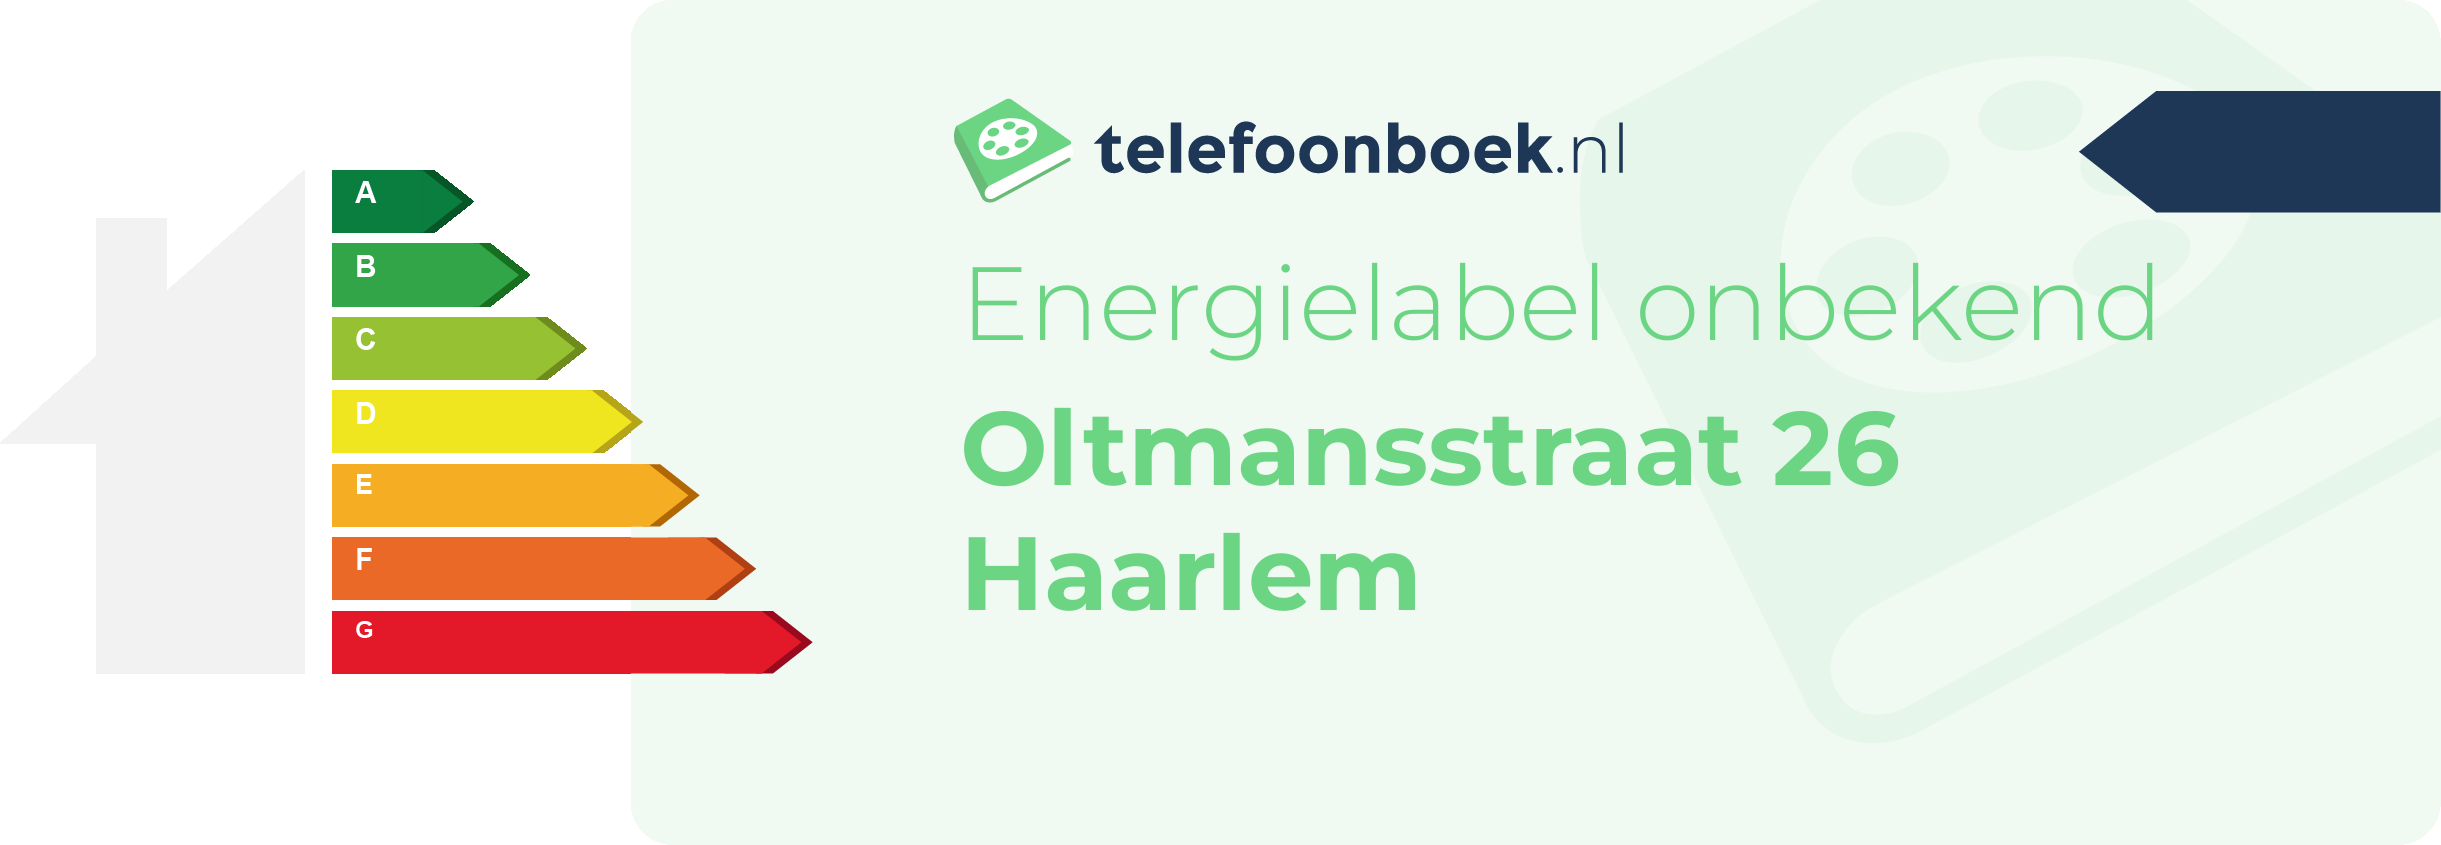 Energielabel Oltmansstraat 26 Haarlem